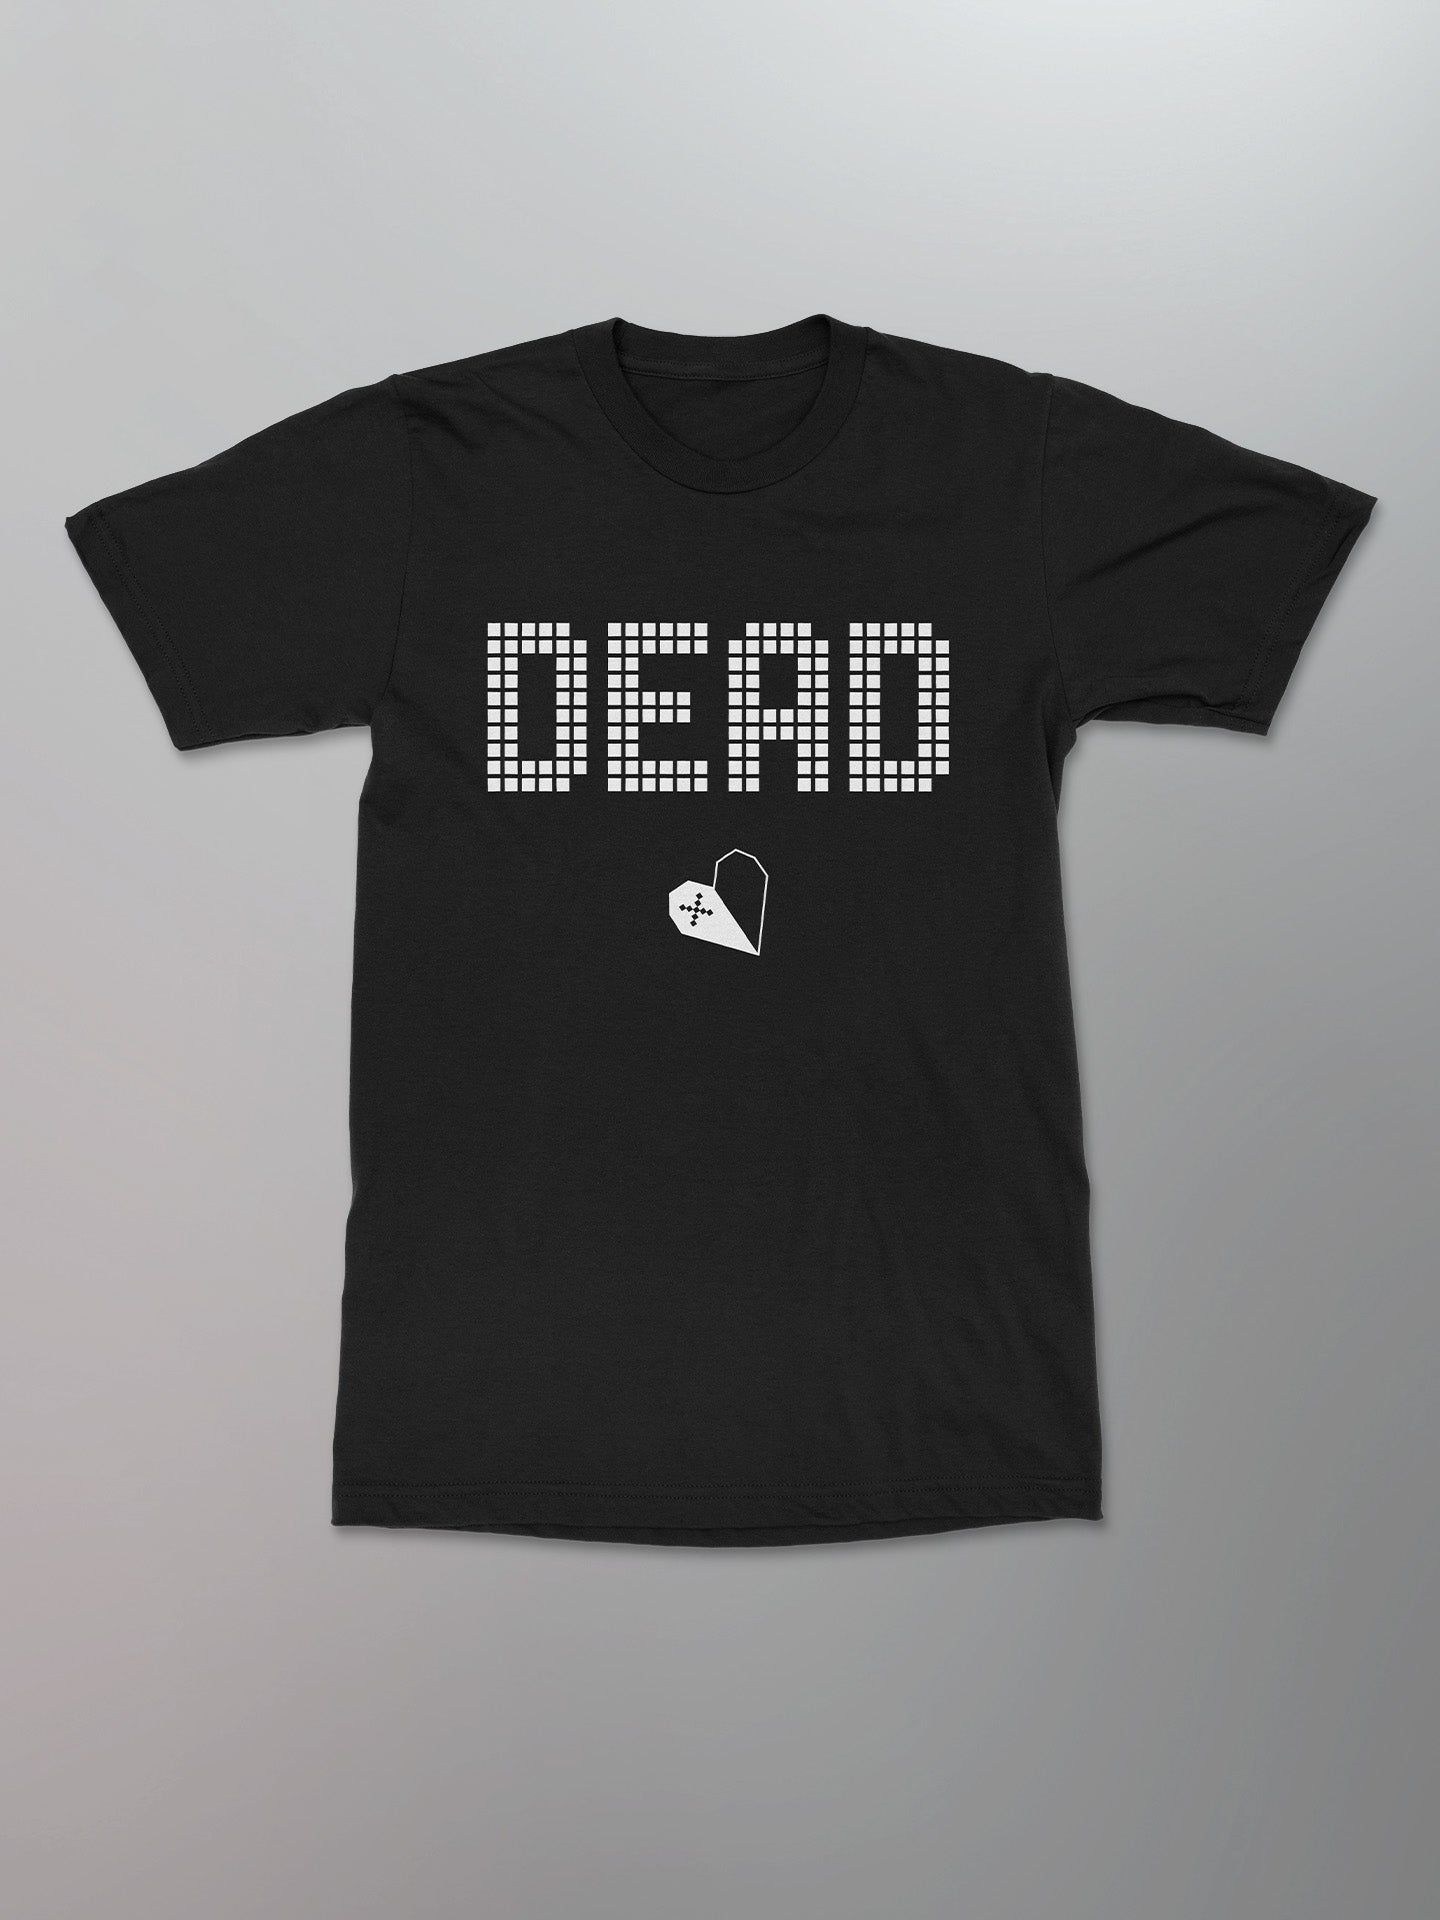 Nouveau Arcade - Dead Hearts Shirt